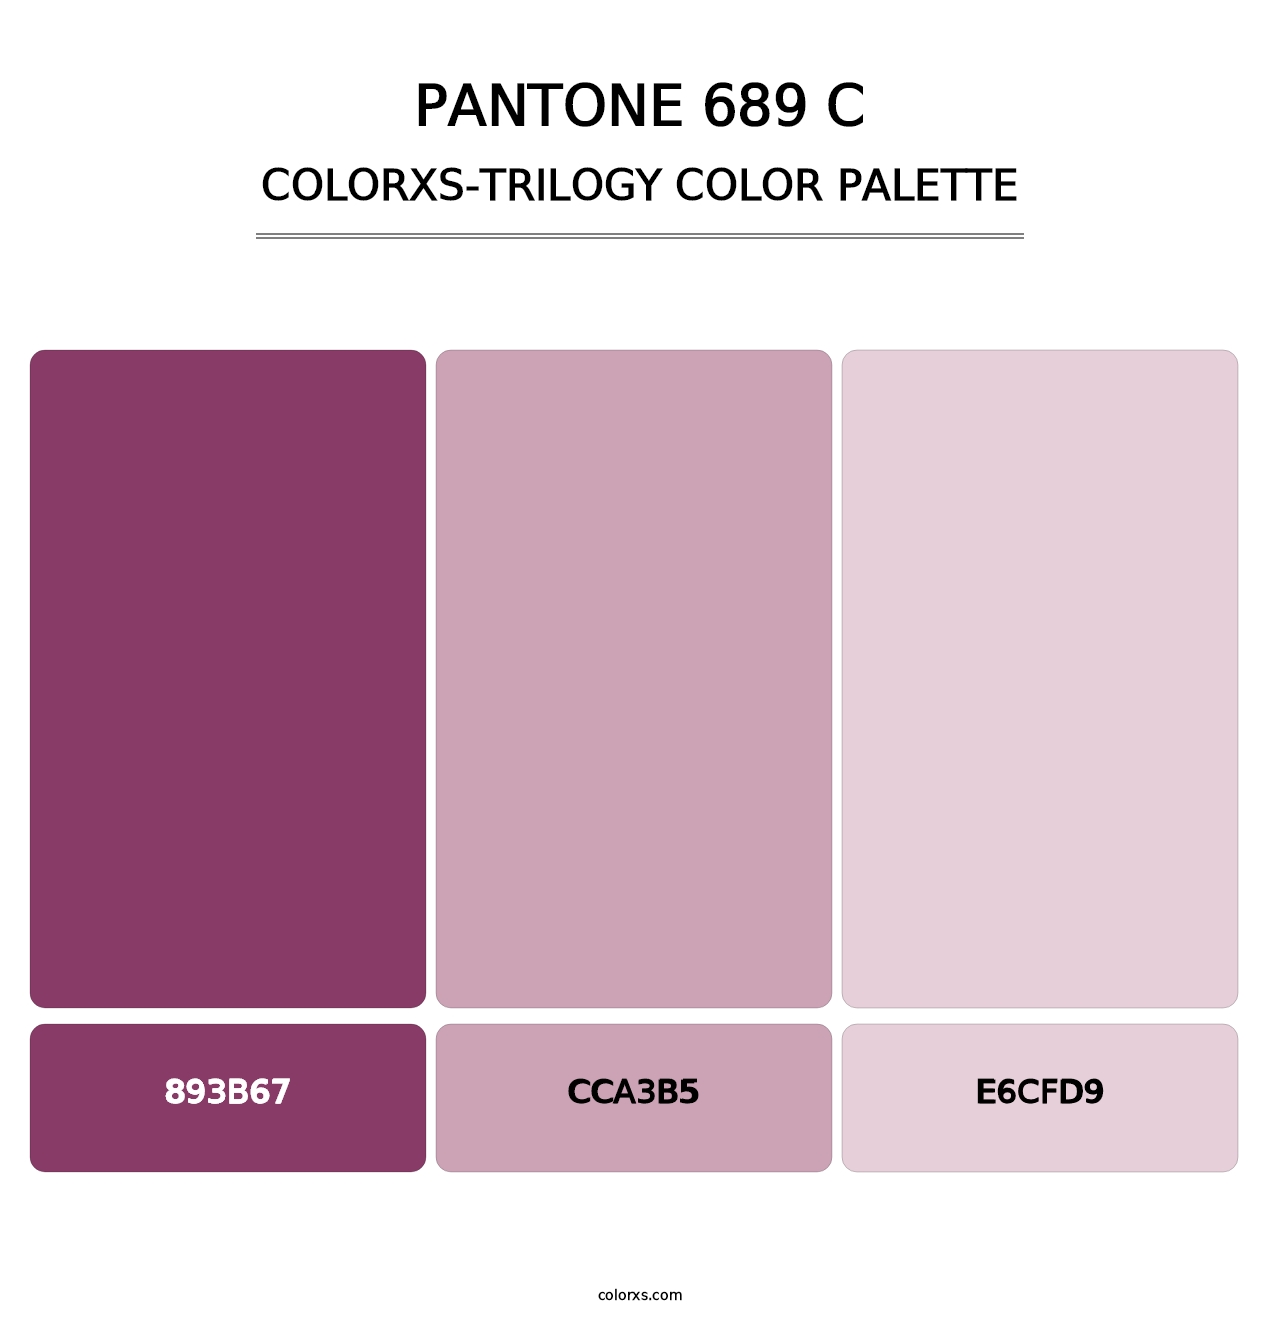 PANTONE 689 C - Colorxs Trilogy Palette